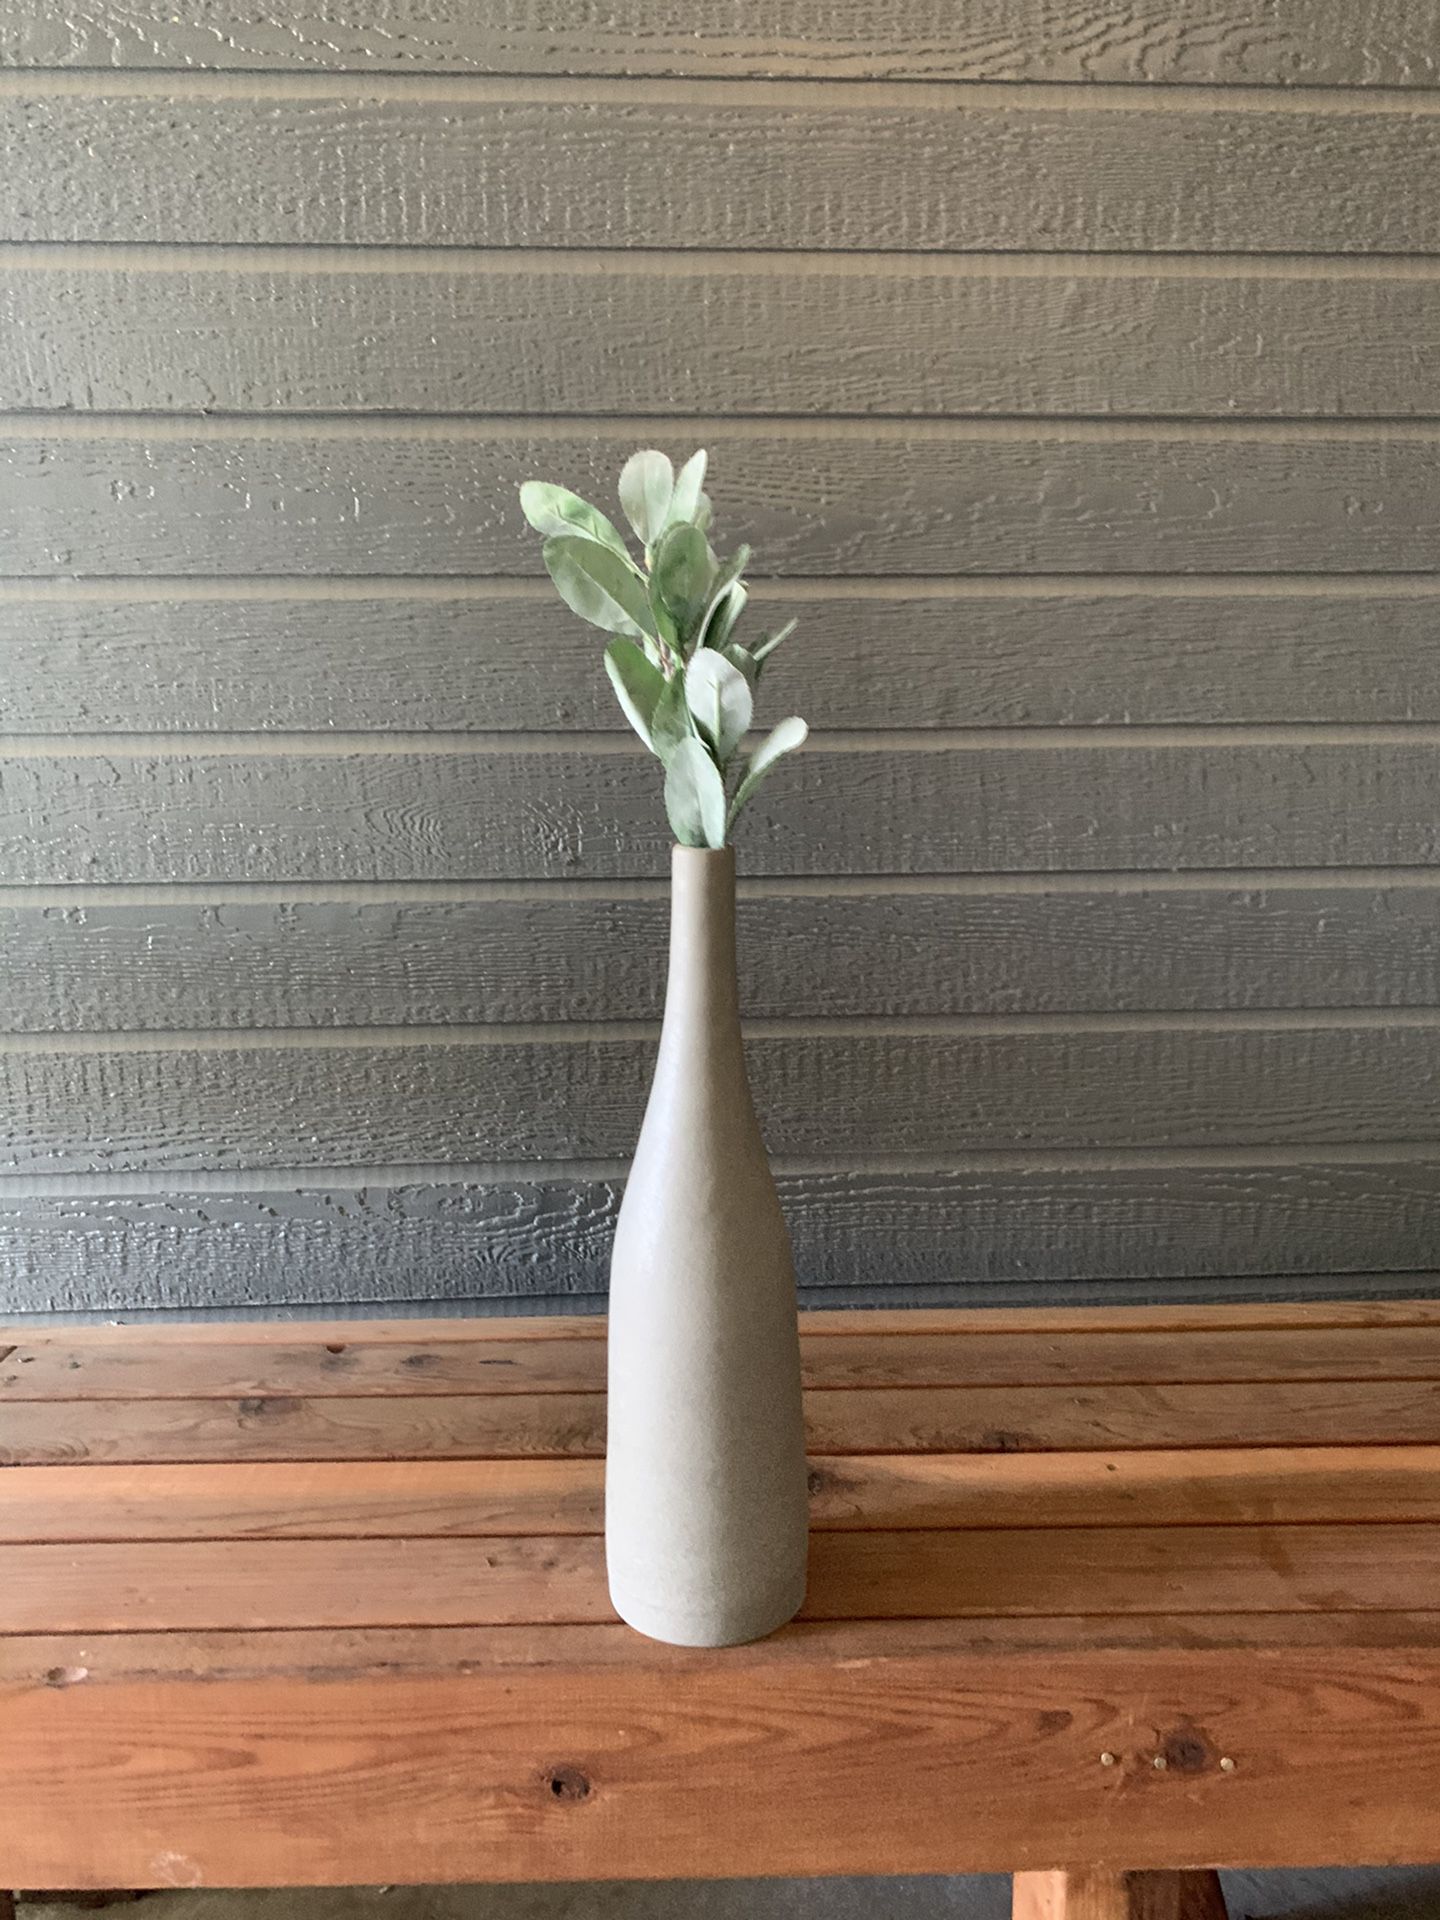 Large ceramic vase with fake plant